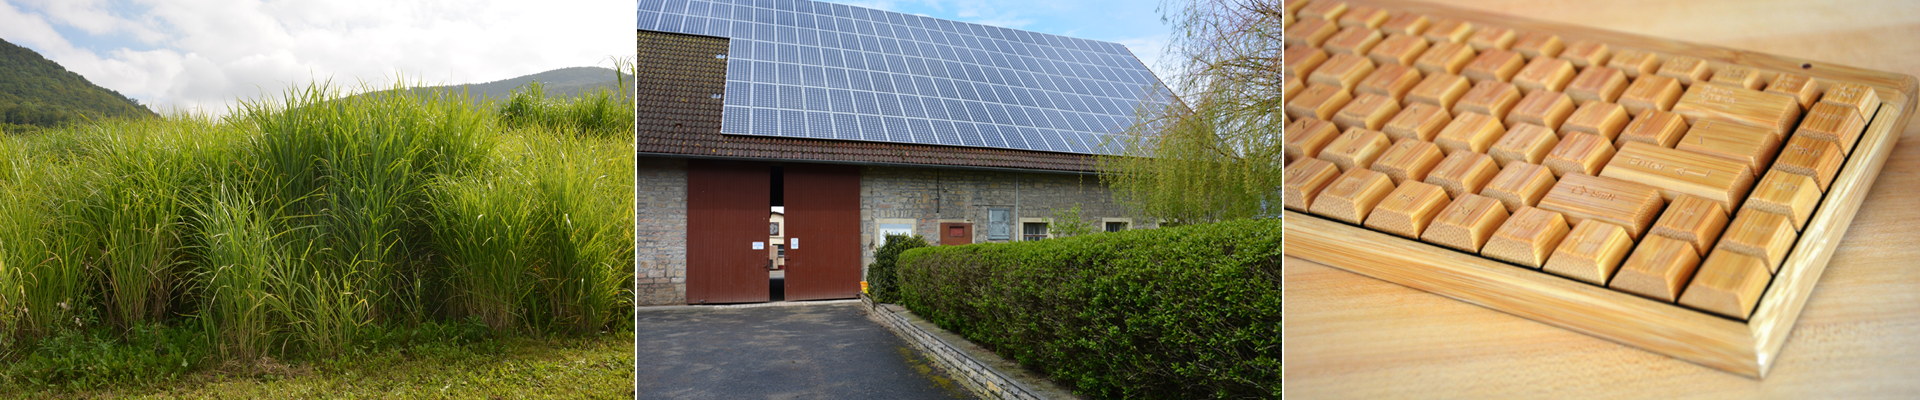 C.A.R.M.E.N.-WebSeminar „Wärmepumpe trifft Photovoltaik – Heizen mit Erneuerbaren Energien”